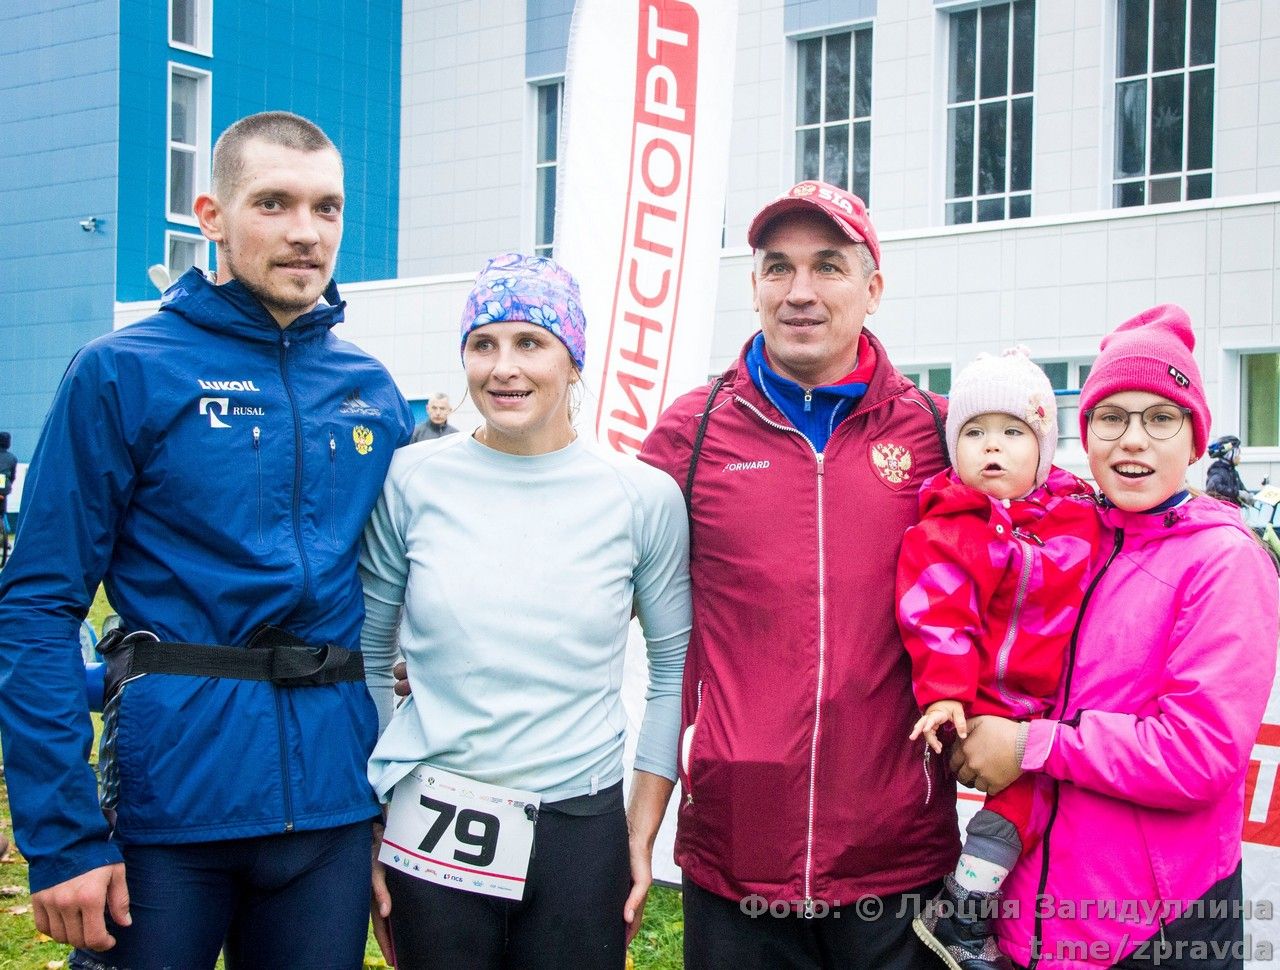 На «Маяке» более 250 участников приняли участие в Первенстве России по триатлону